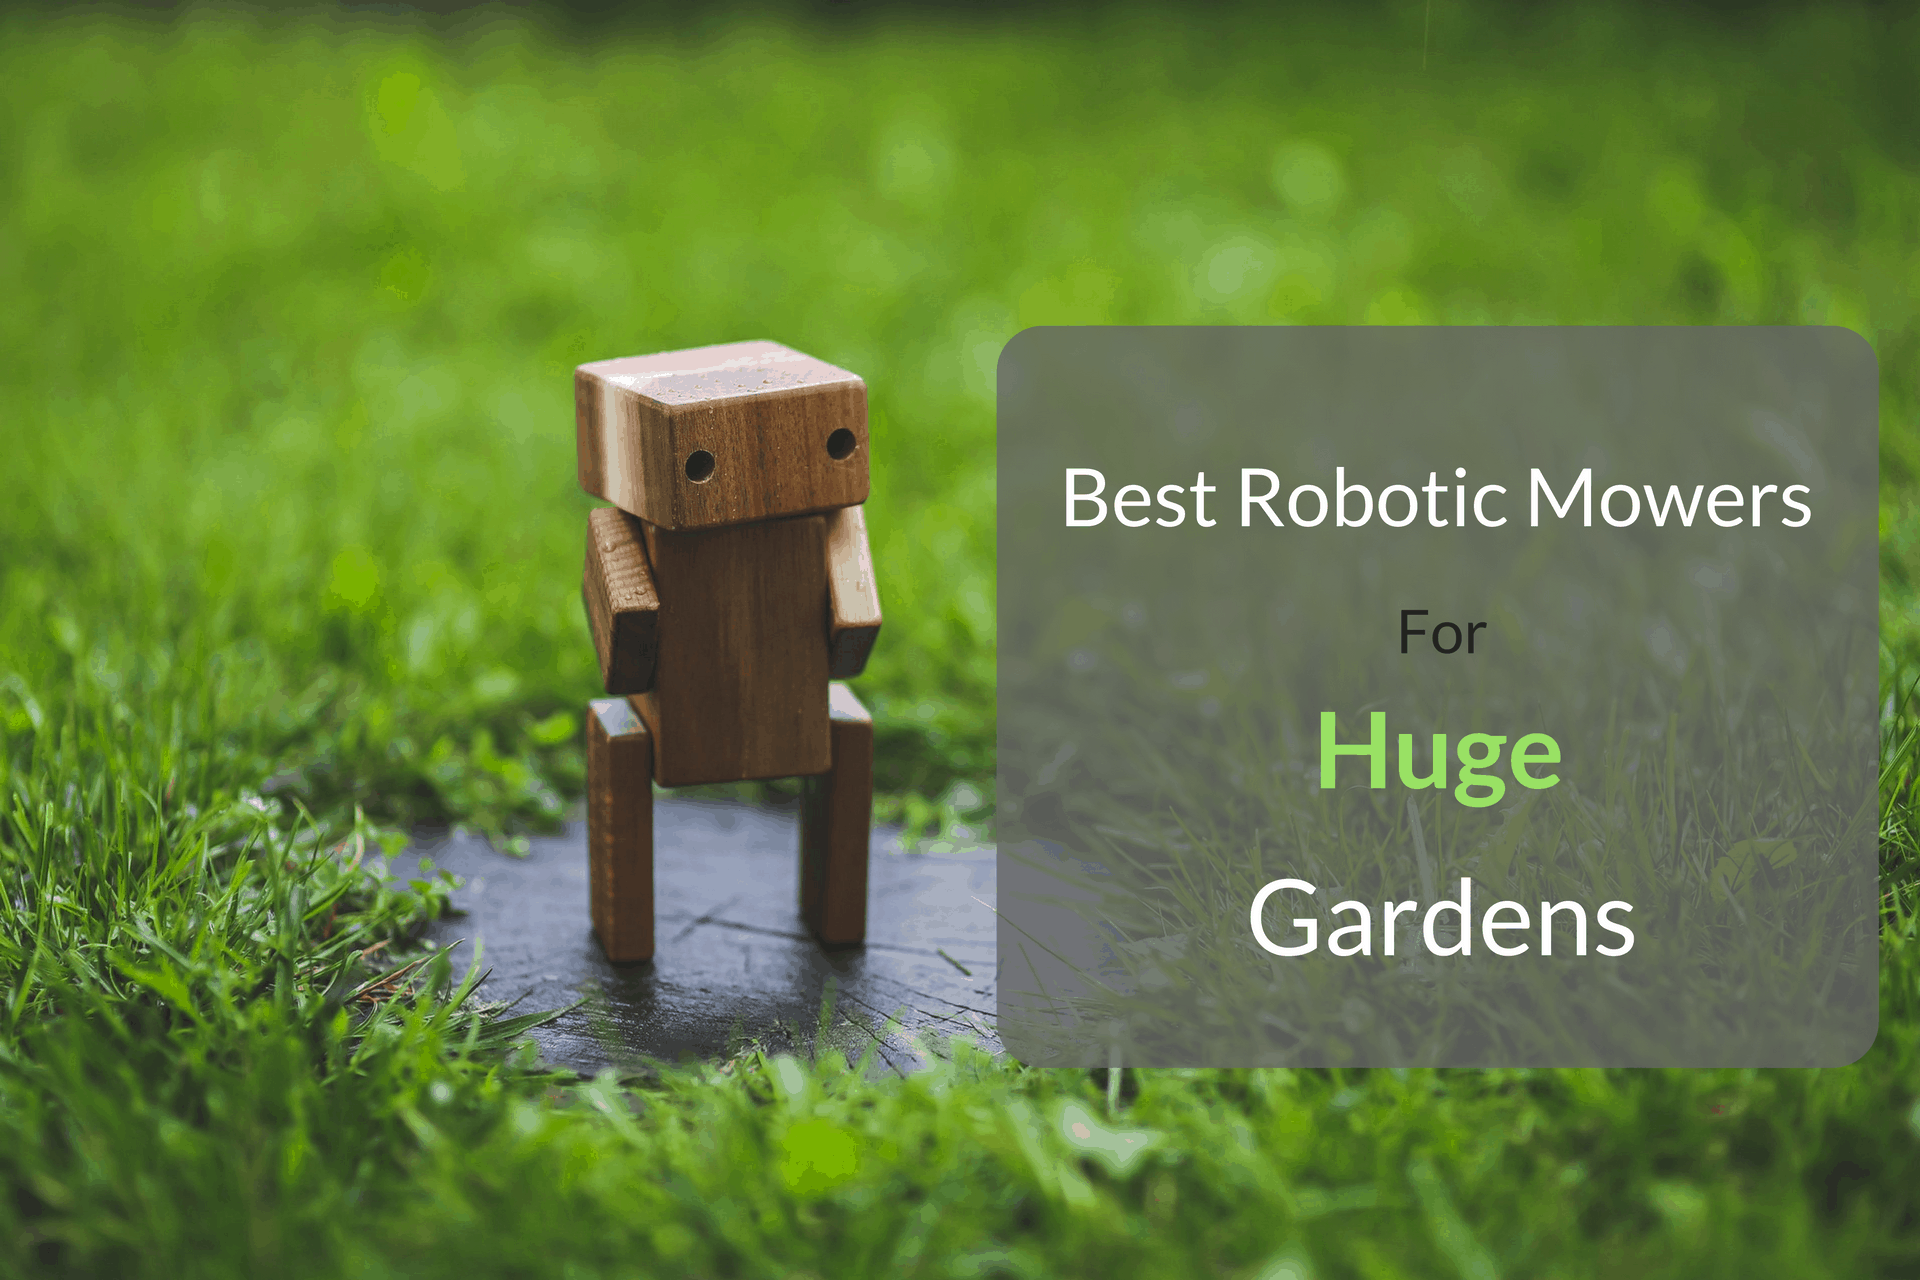 Best Robotic Lawn Mowers For Huge Gardens